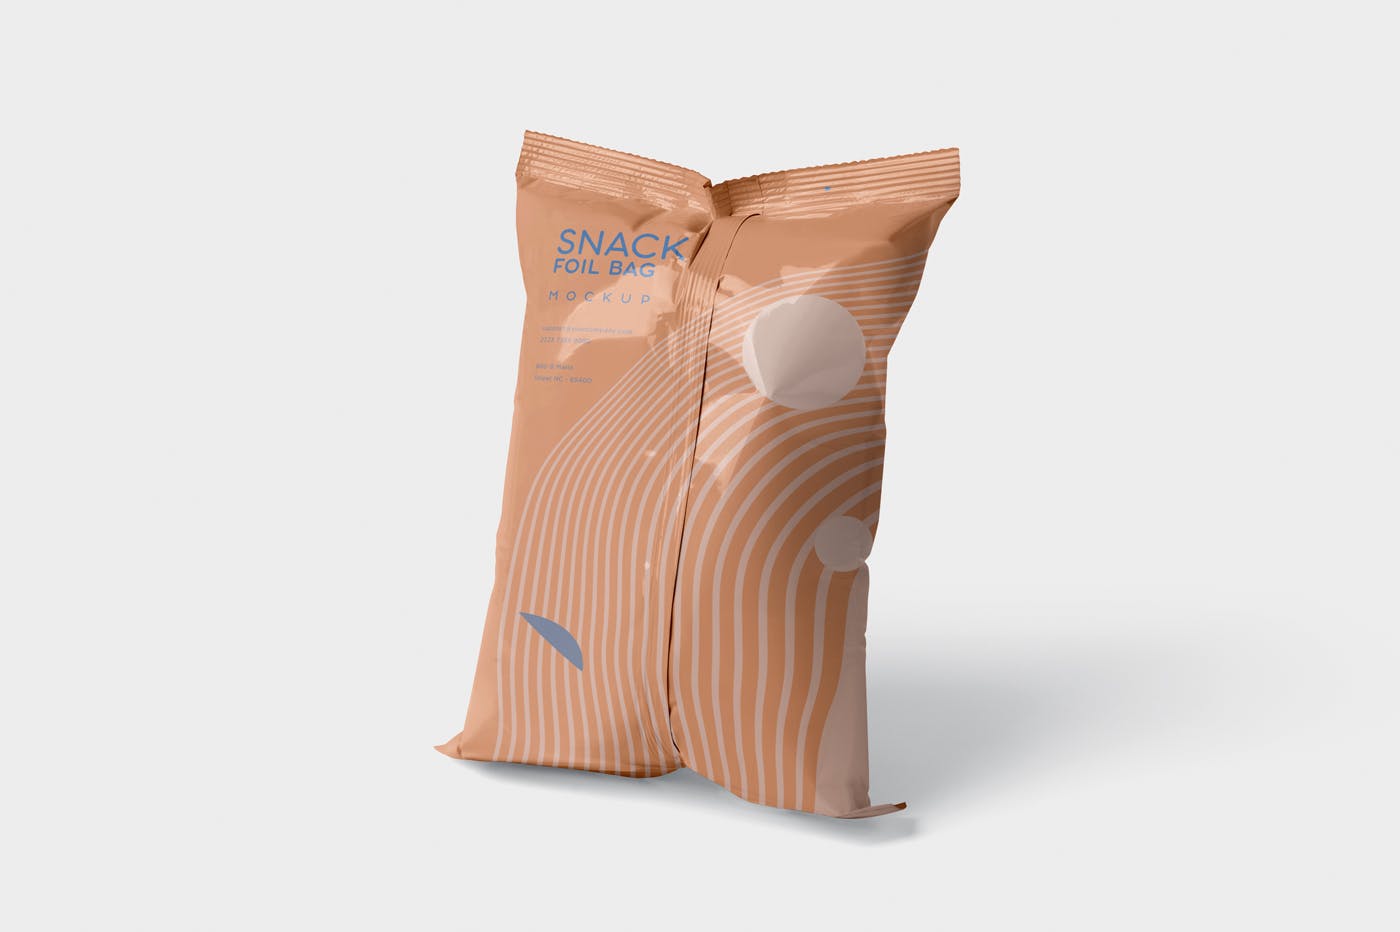 小吃零食铝箔袋/塑料包装袋设计图素材库精选 Snack Foil Bag Mockup – Plastic插图(2)